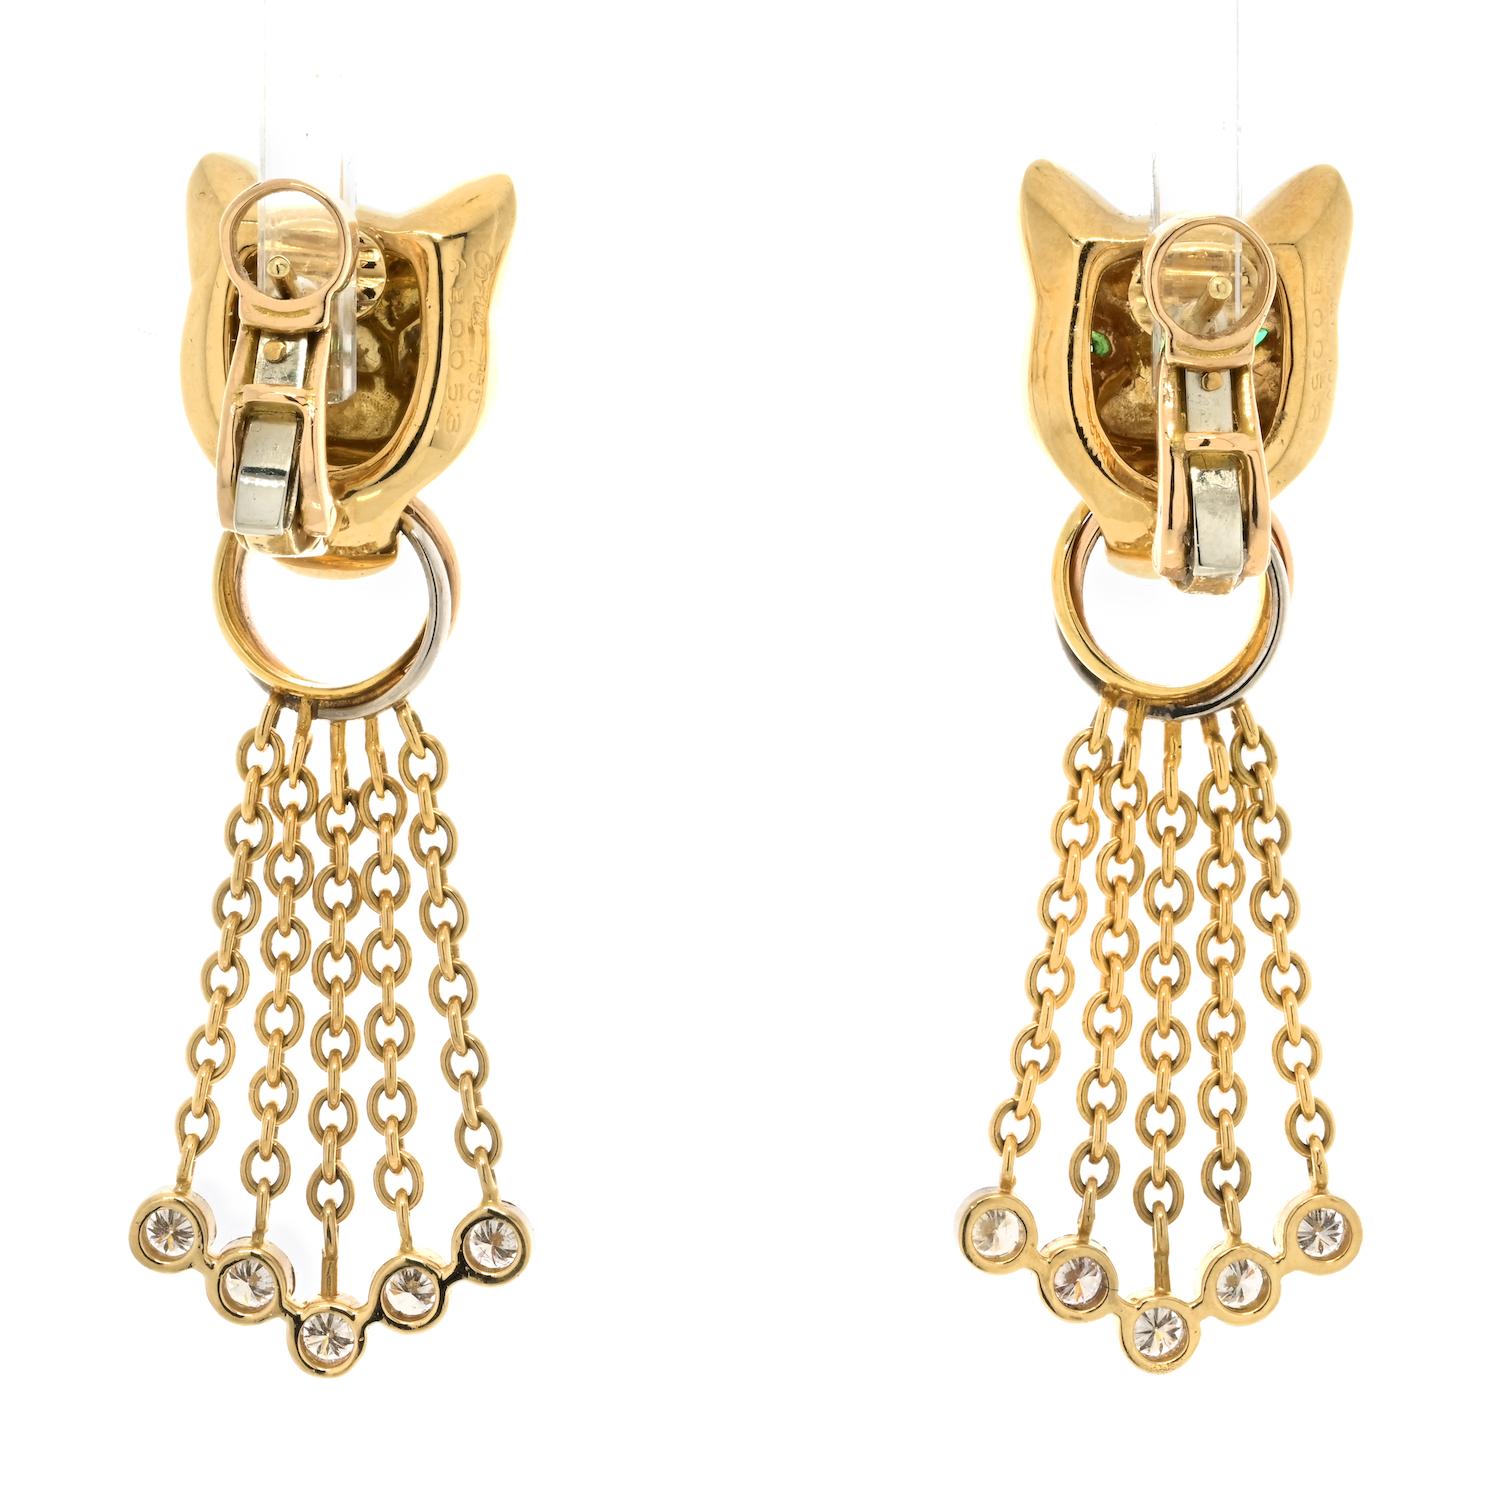 Boucles d'oreilles 'Panthère' en or jaune 18 carats avec diamants, émeraudes, onyx et perles de Cartier 1